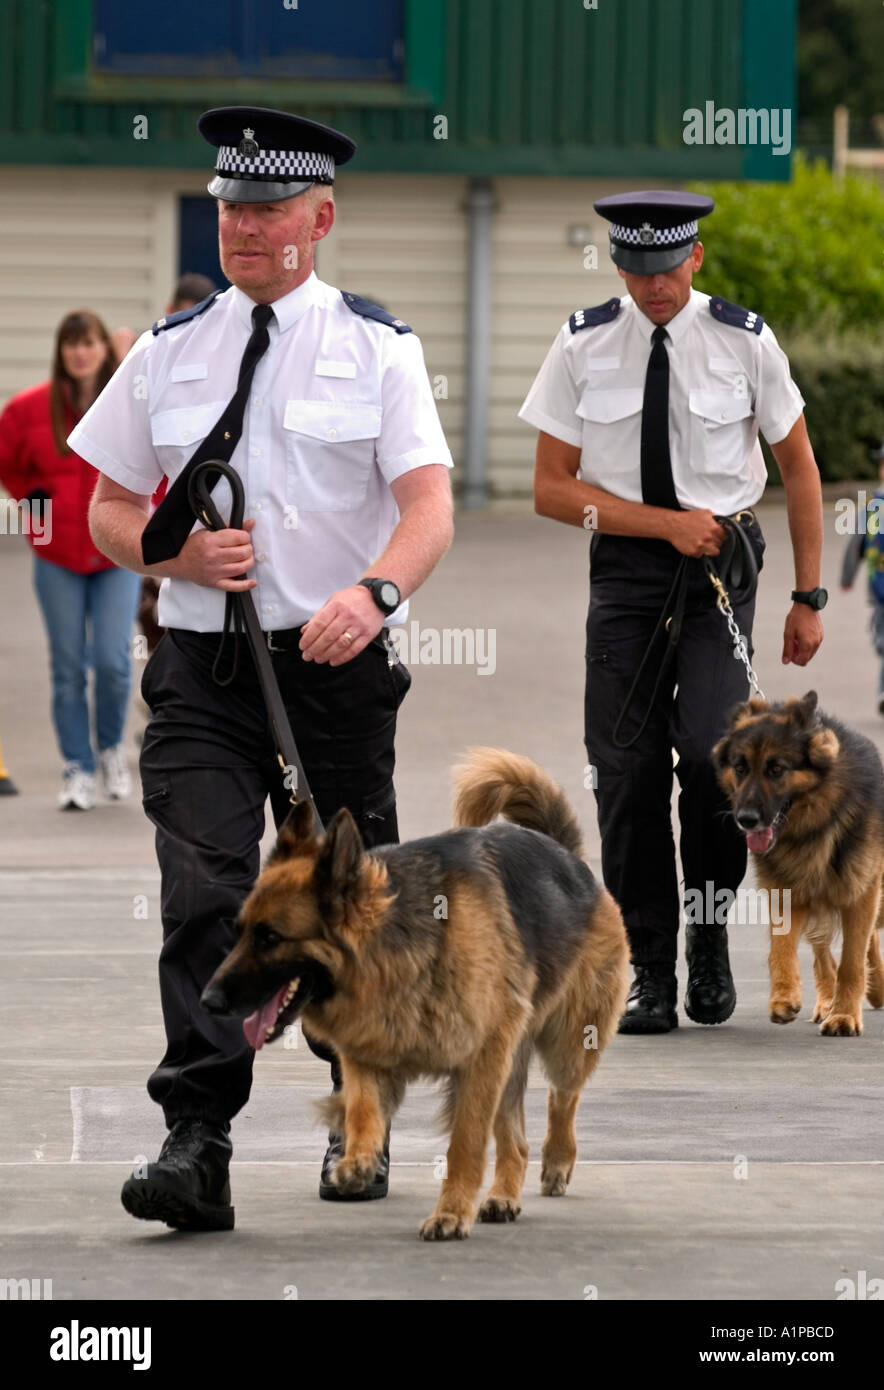 Les gestionnaires de la police avec des chiens Grande-bretagne UK Banque D'Images